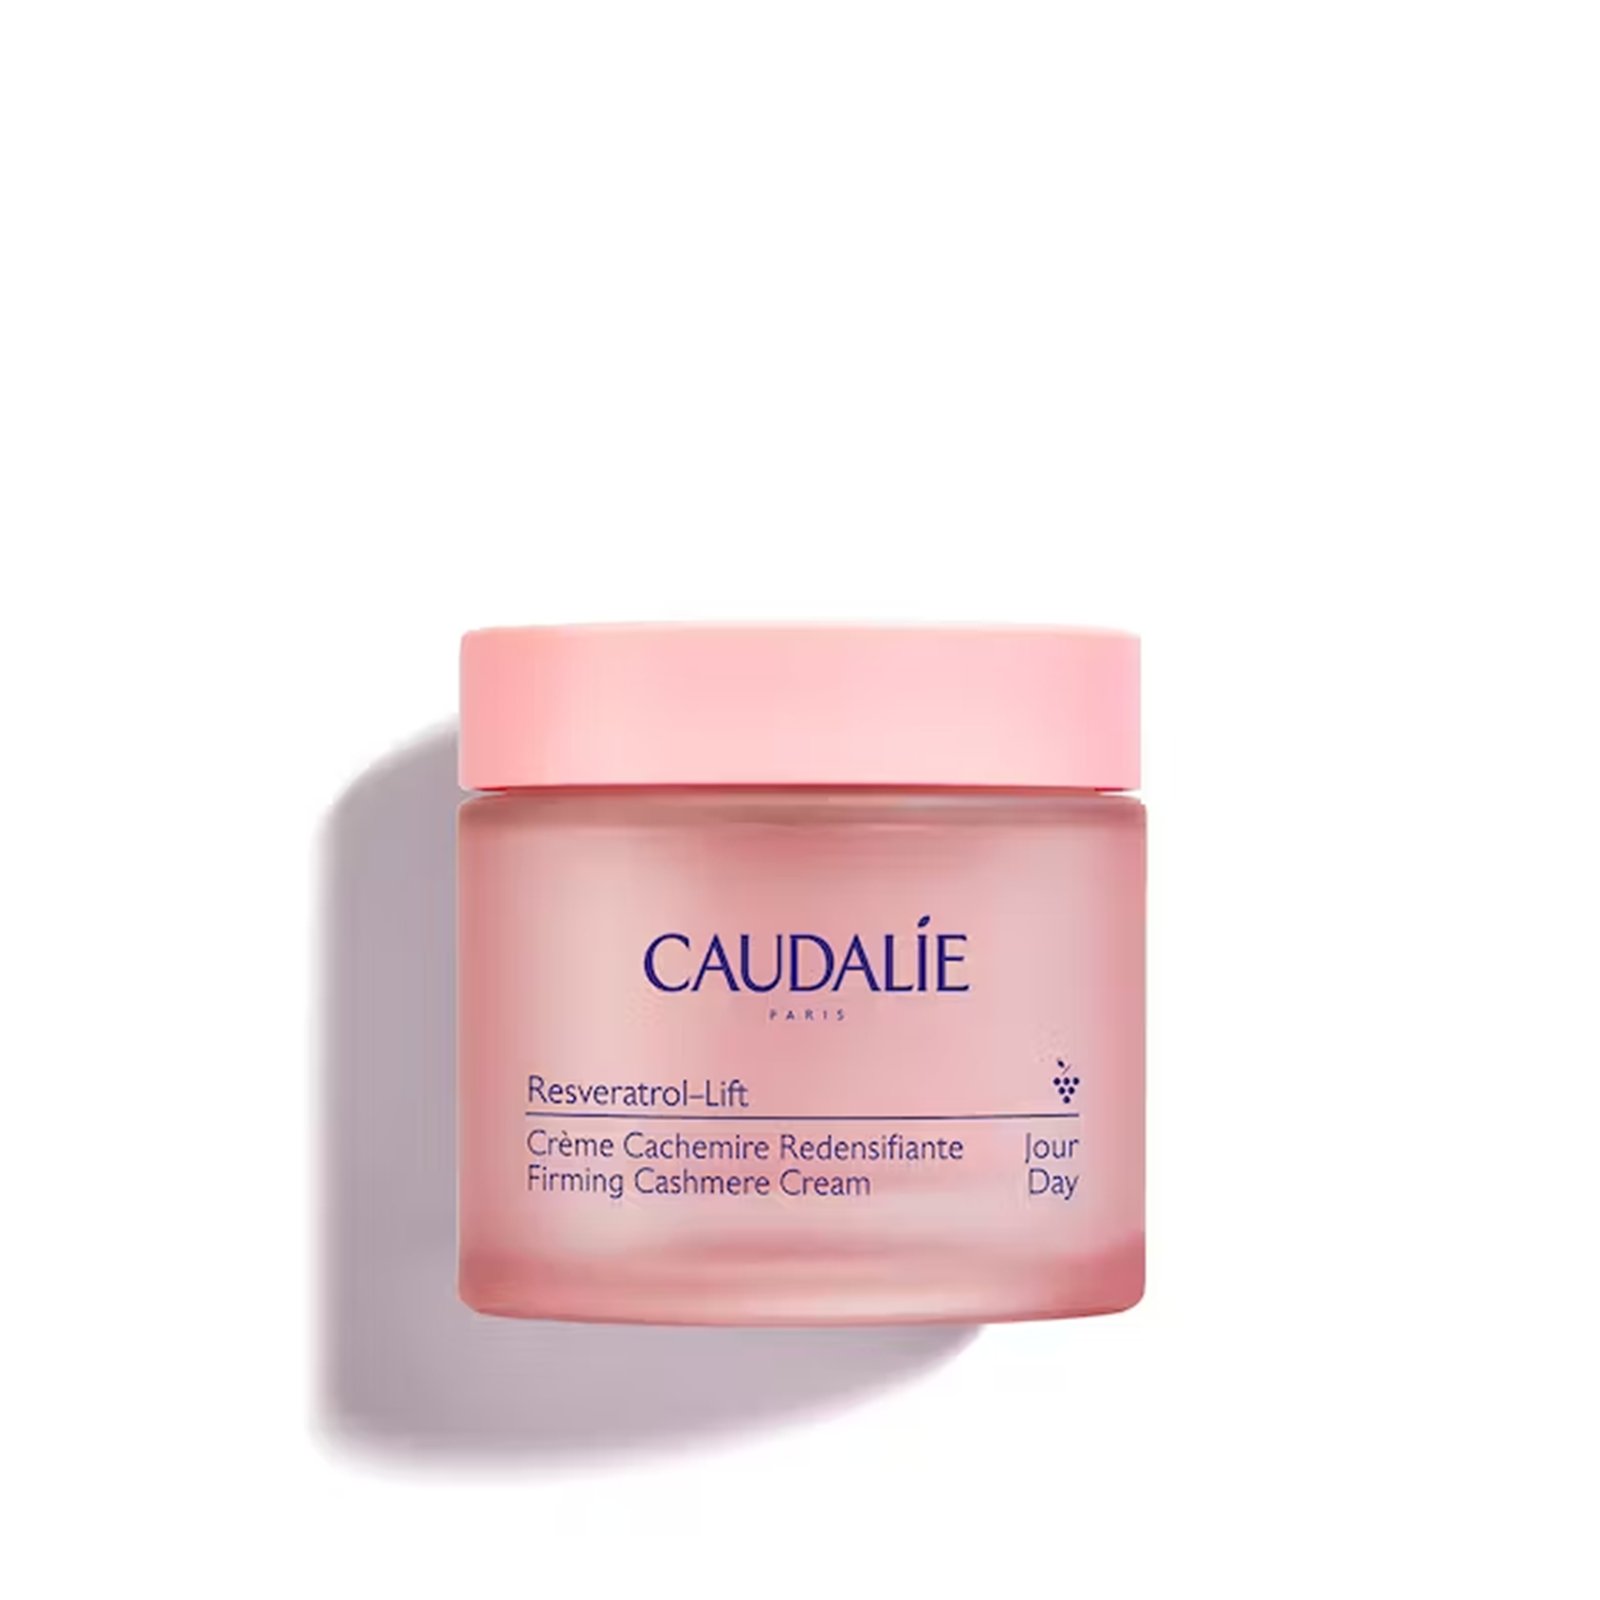 Caudalie Resveratrol-Lift Firming Cashmere Cream 50ml (1.6 fl oz)